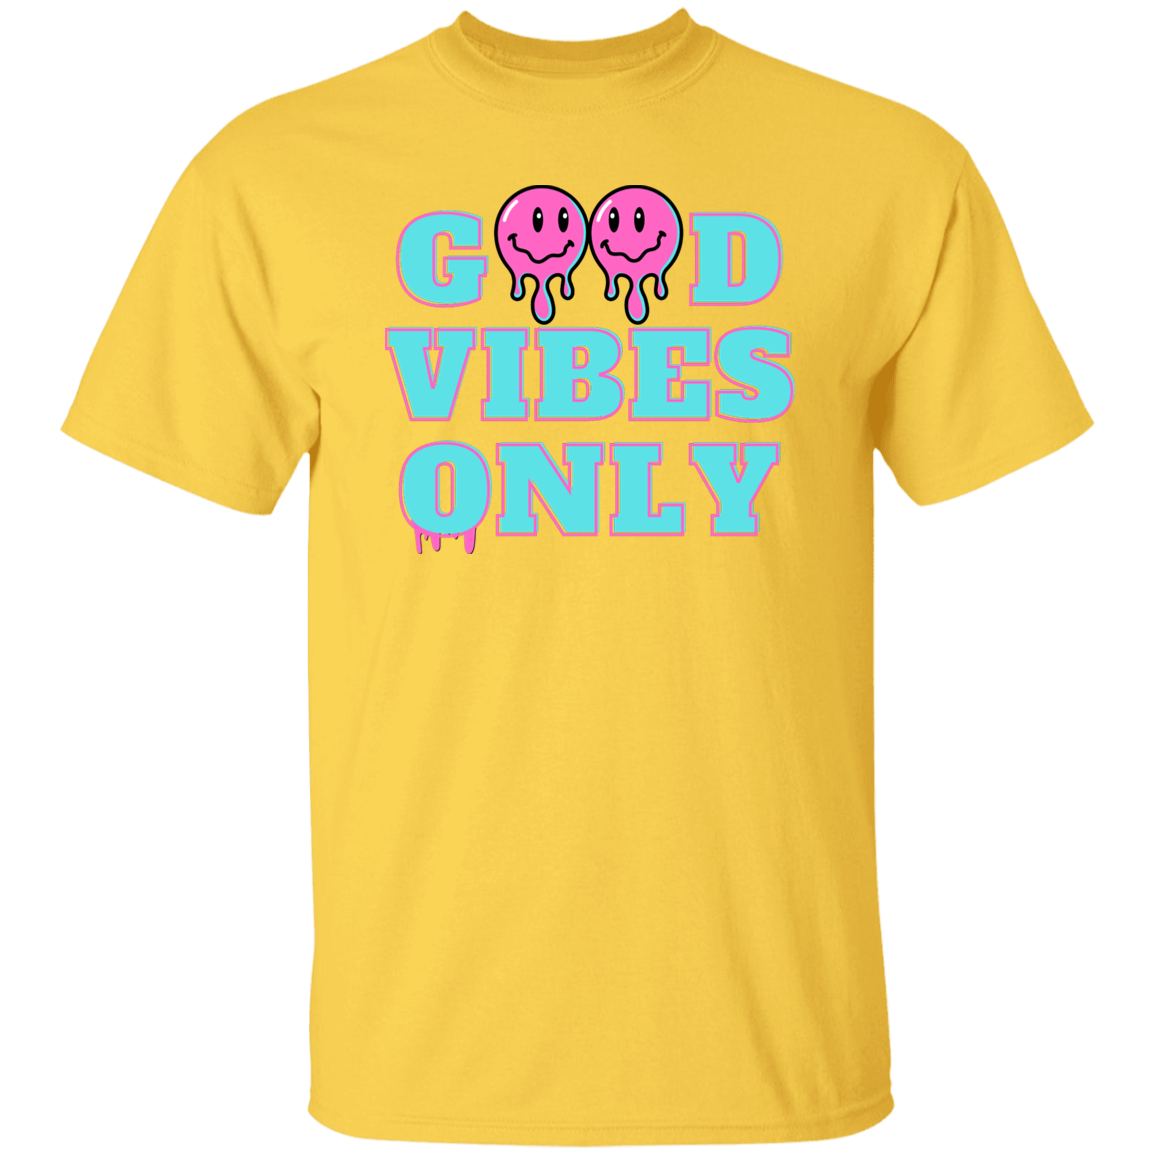 Sólo buenas vibraciones - Camiseta unisex